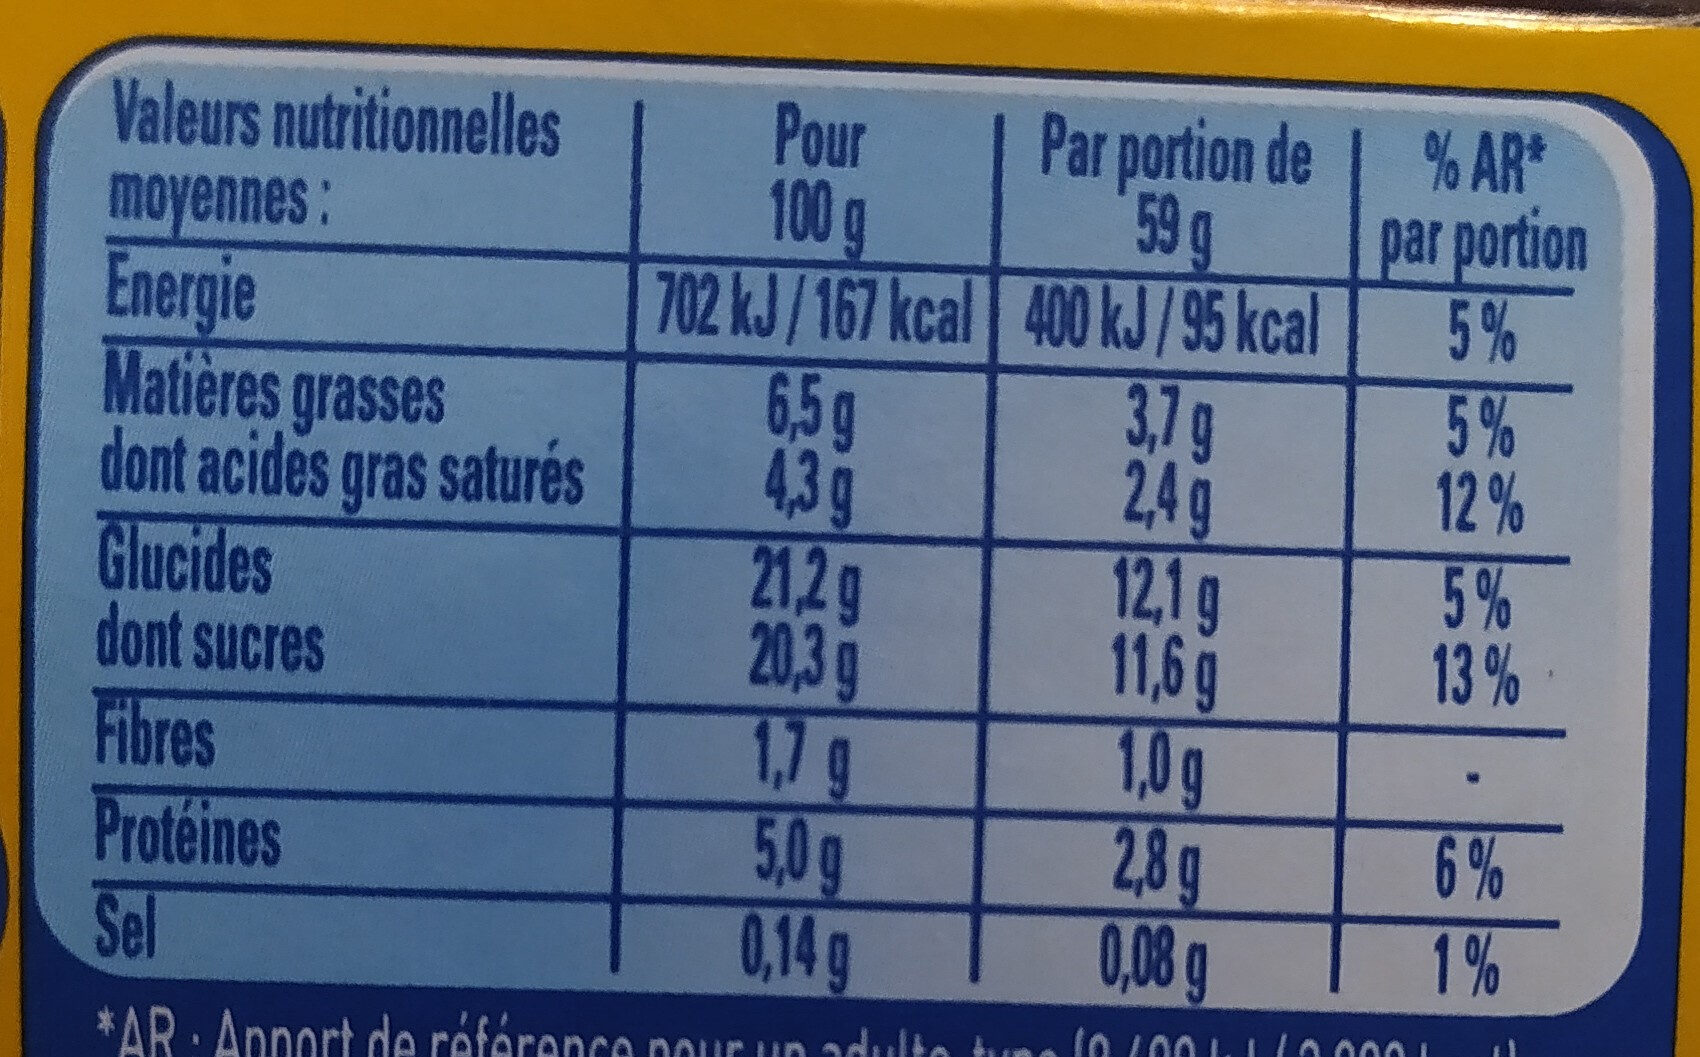 Secret de Mousse Chocolat au lait (4 Pots) Offre Eco - Voedingswaarden - fr